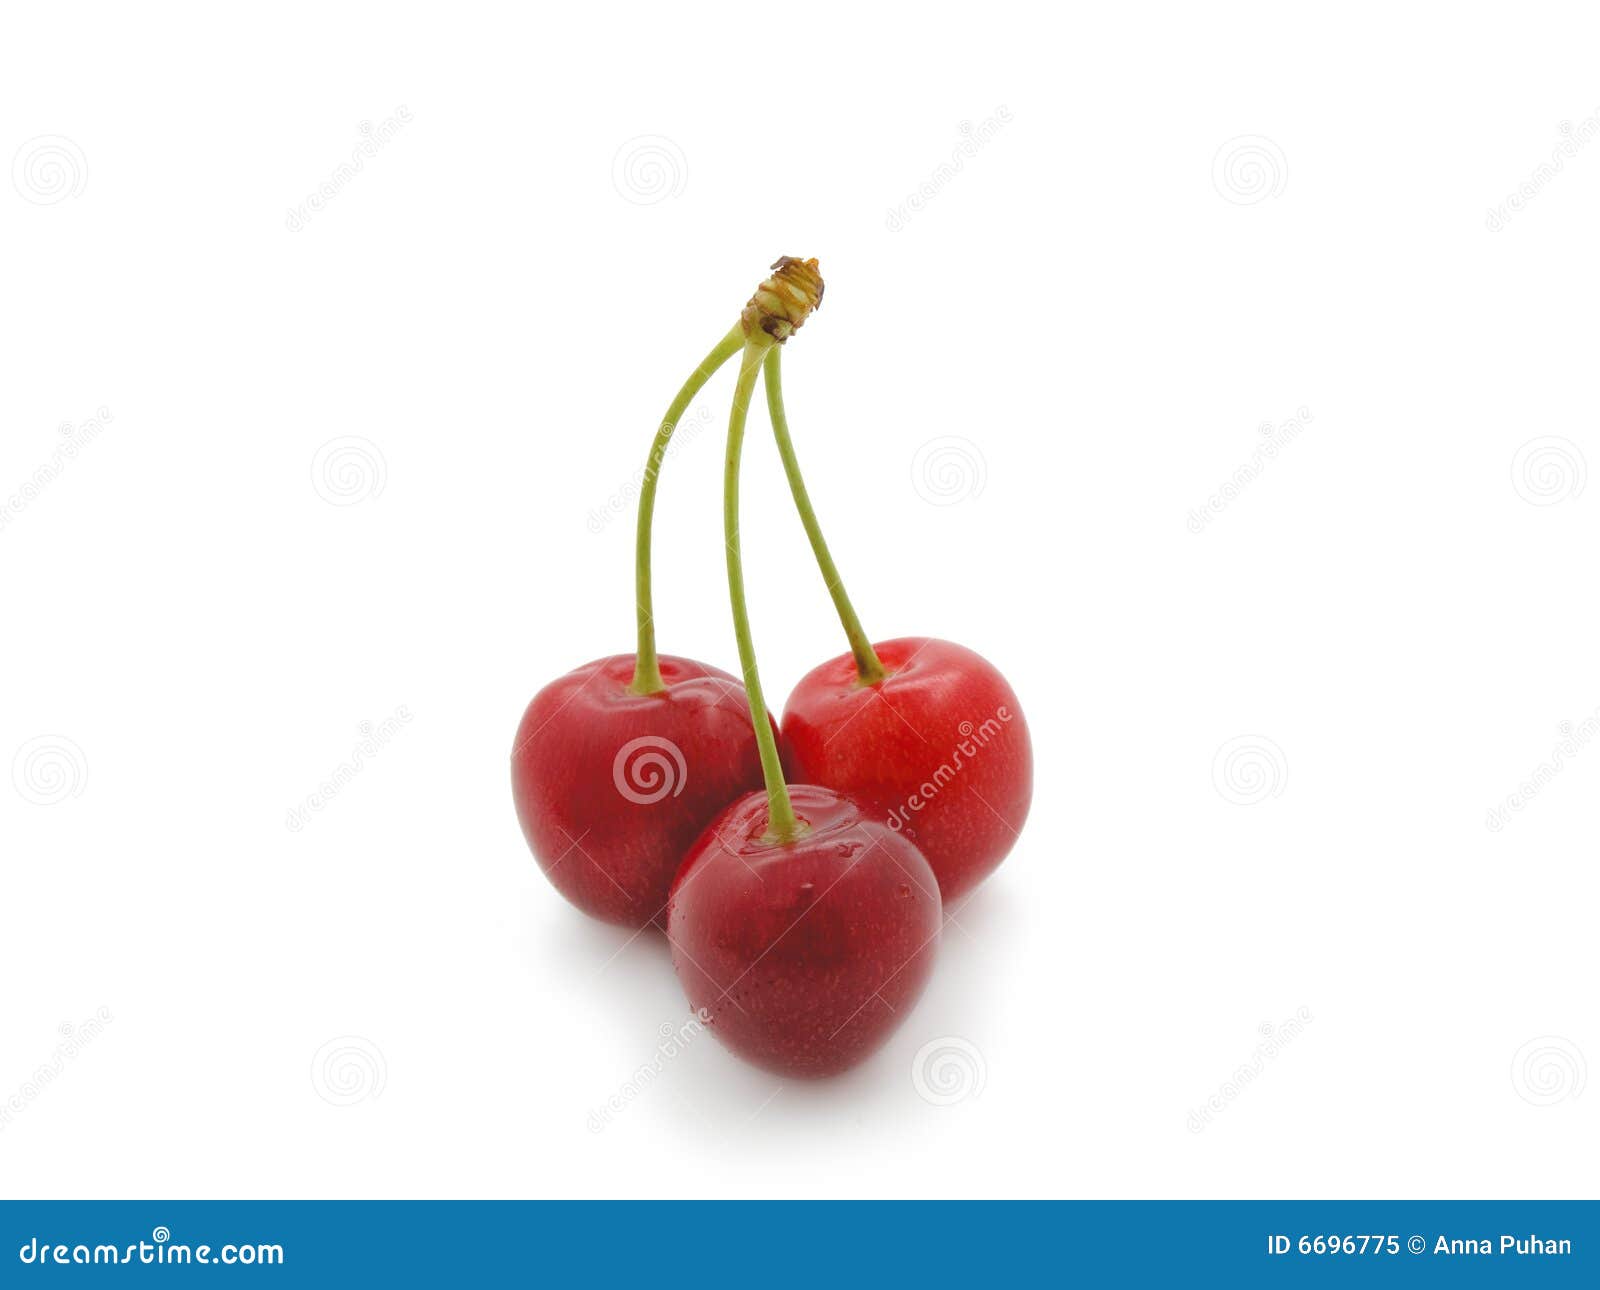 Close-up of Sweet Cherry on White. Stock Image - Image of freshness ...